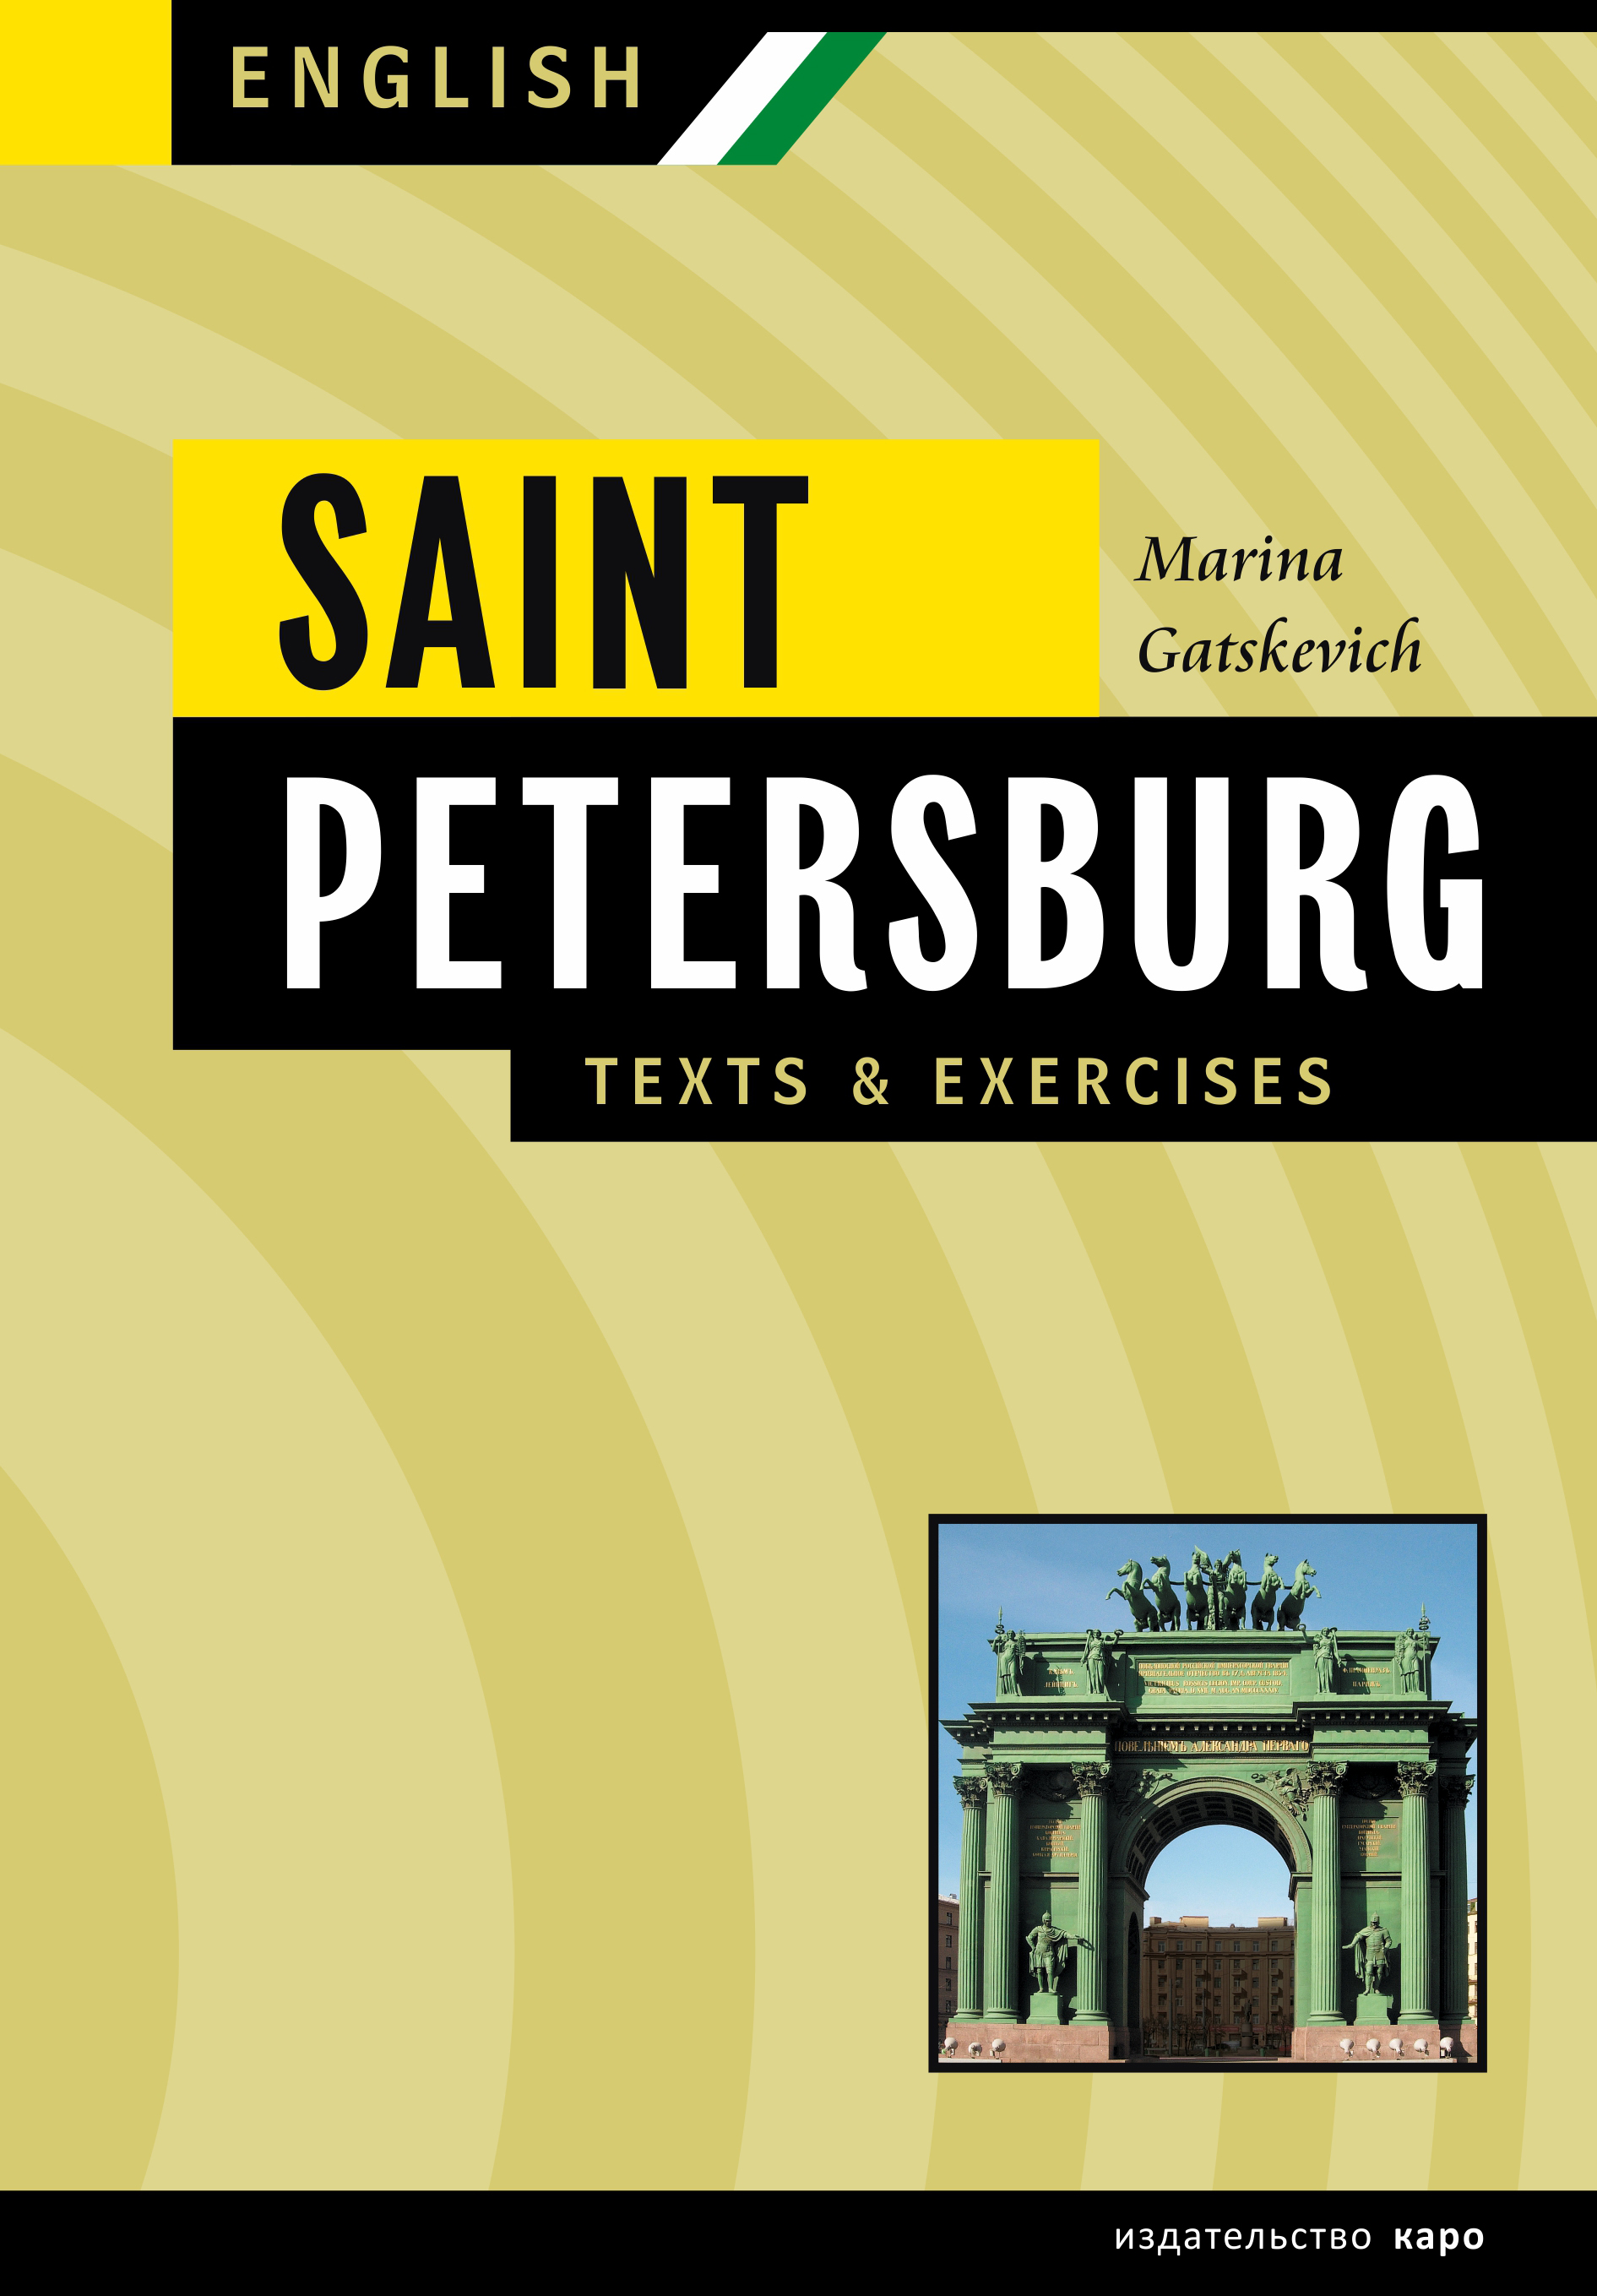 Санкт-Петербург. Тексты и упражнения. Книга 2 / Saint Petersburg: Texts&Exercises